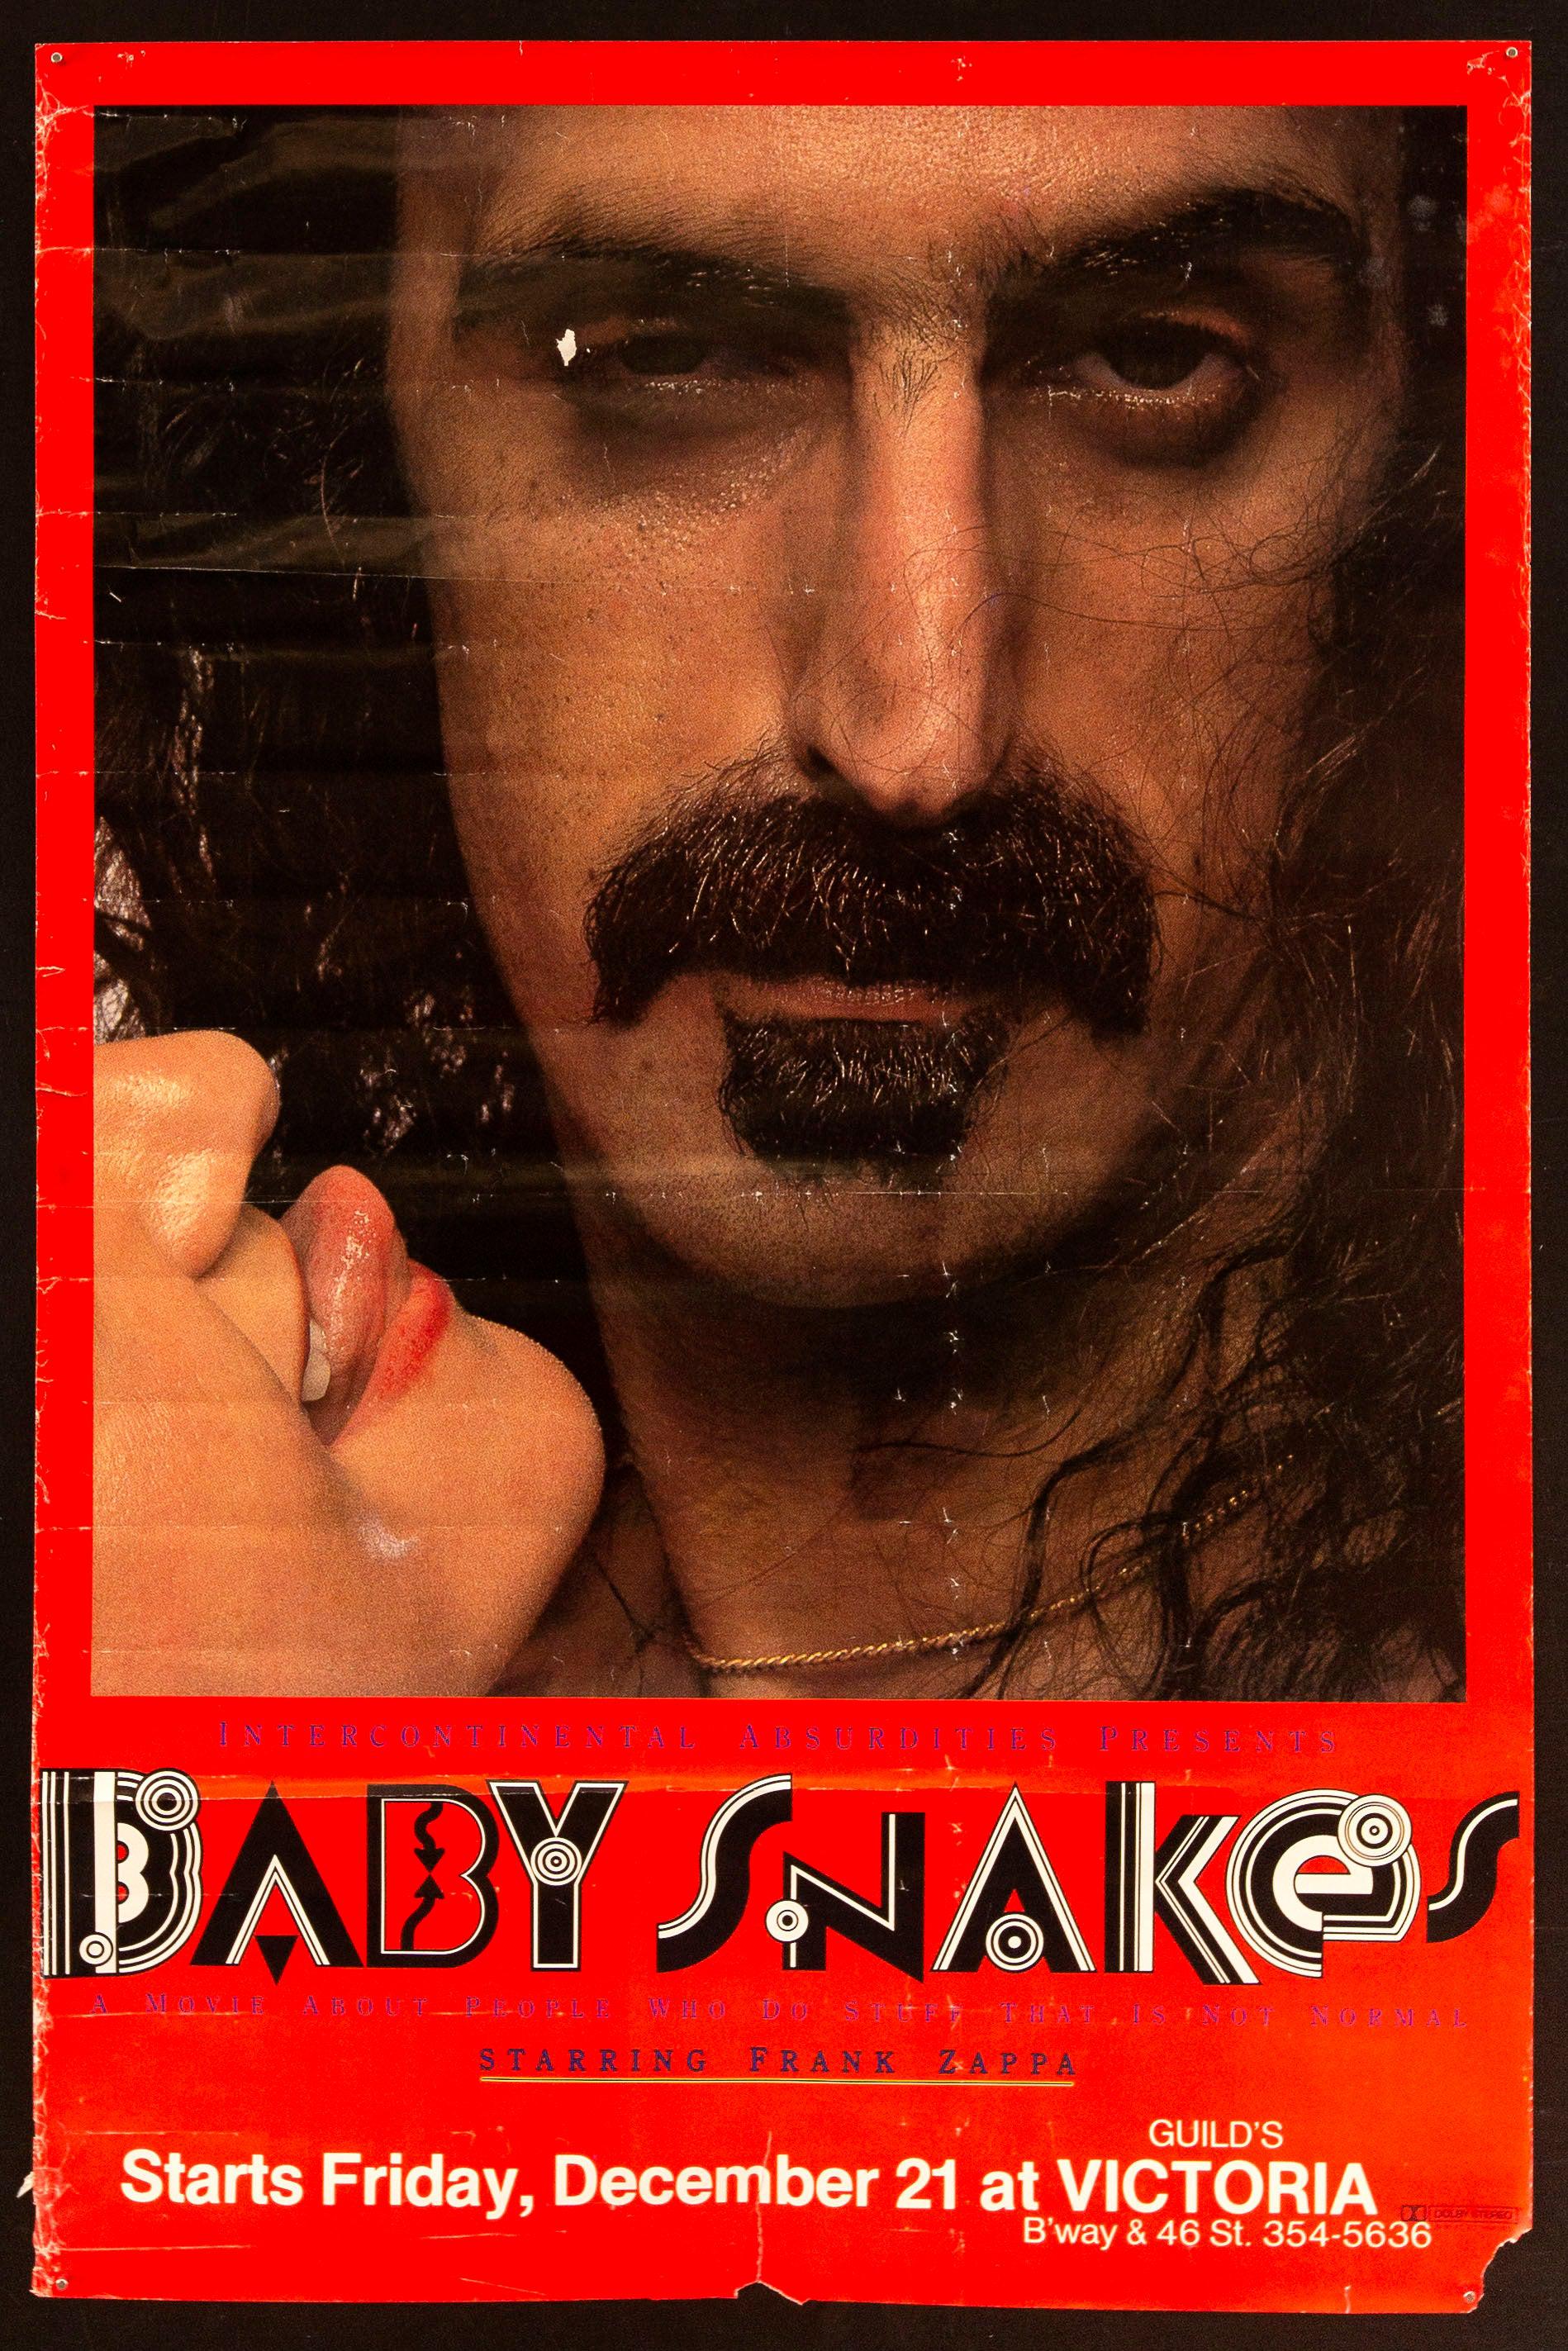 frank zappa baby snakes